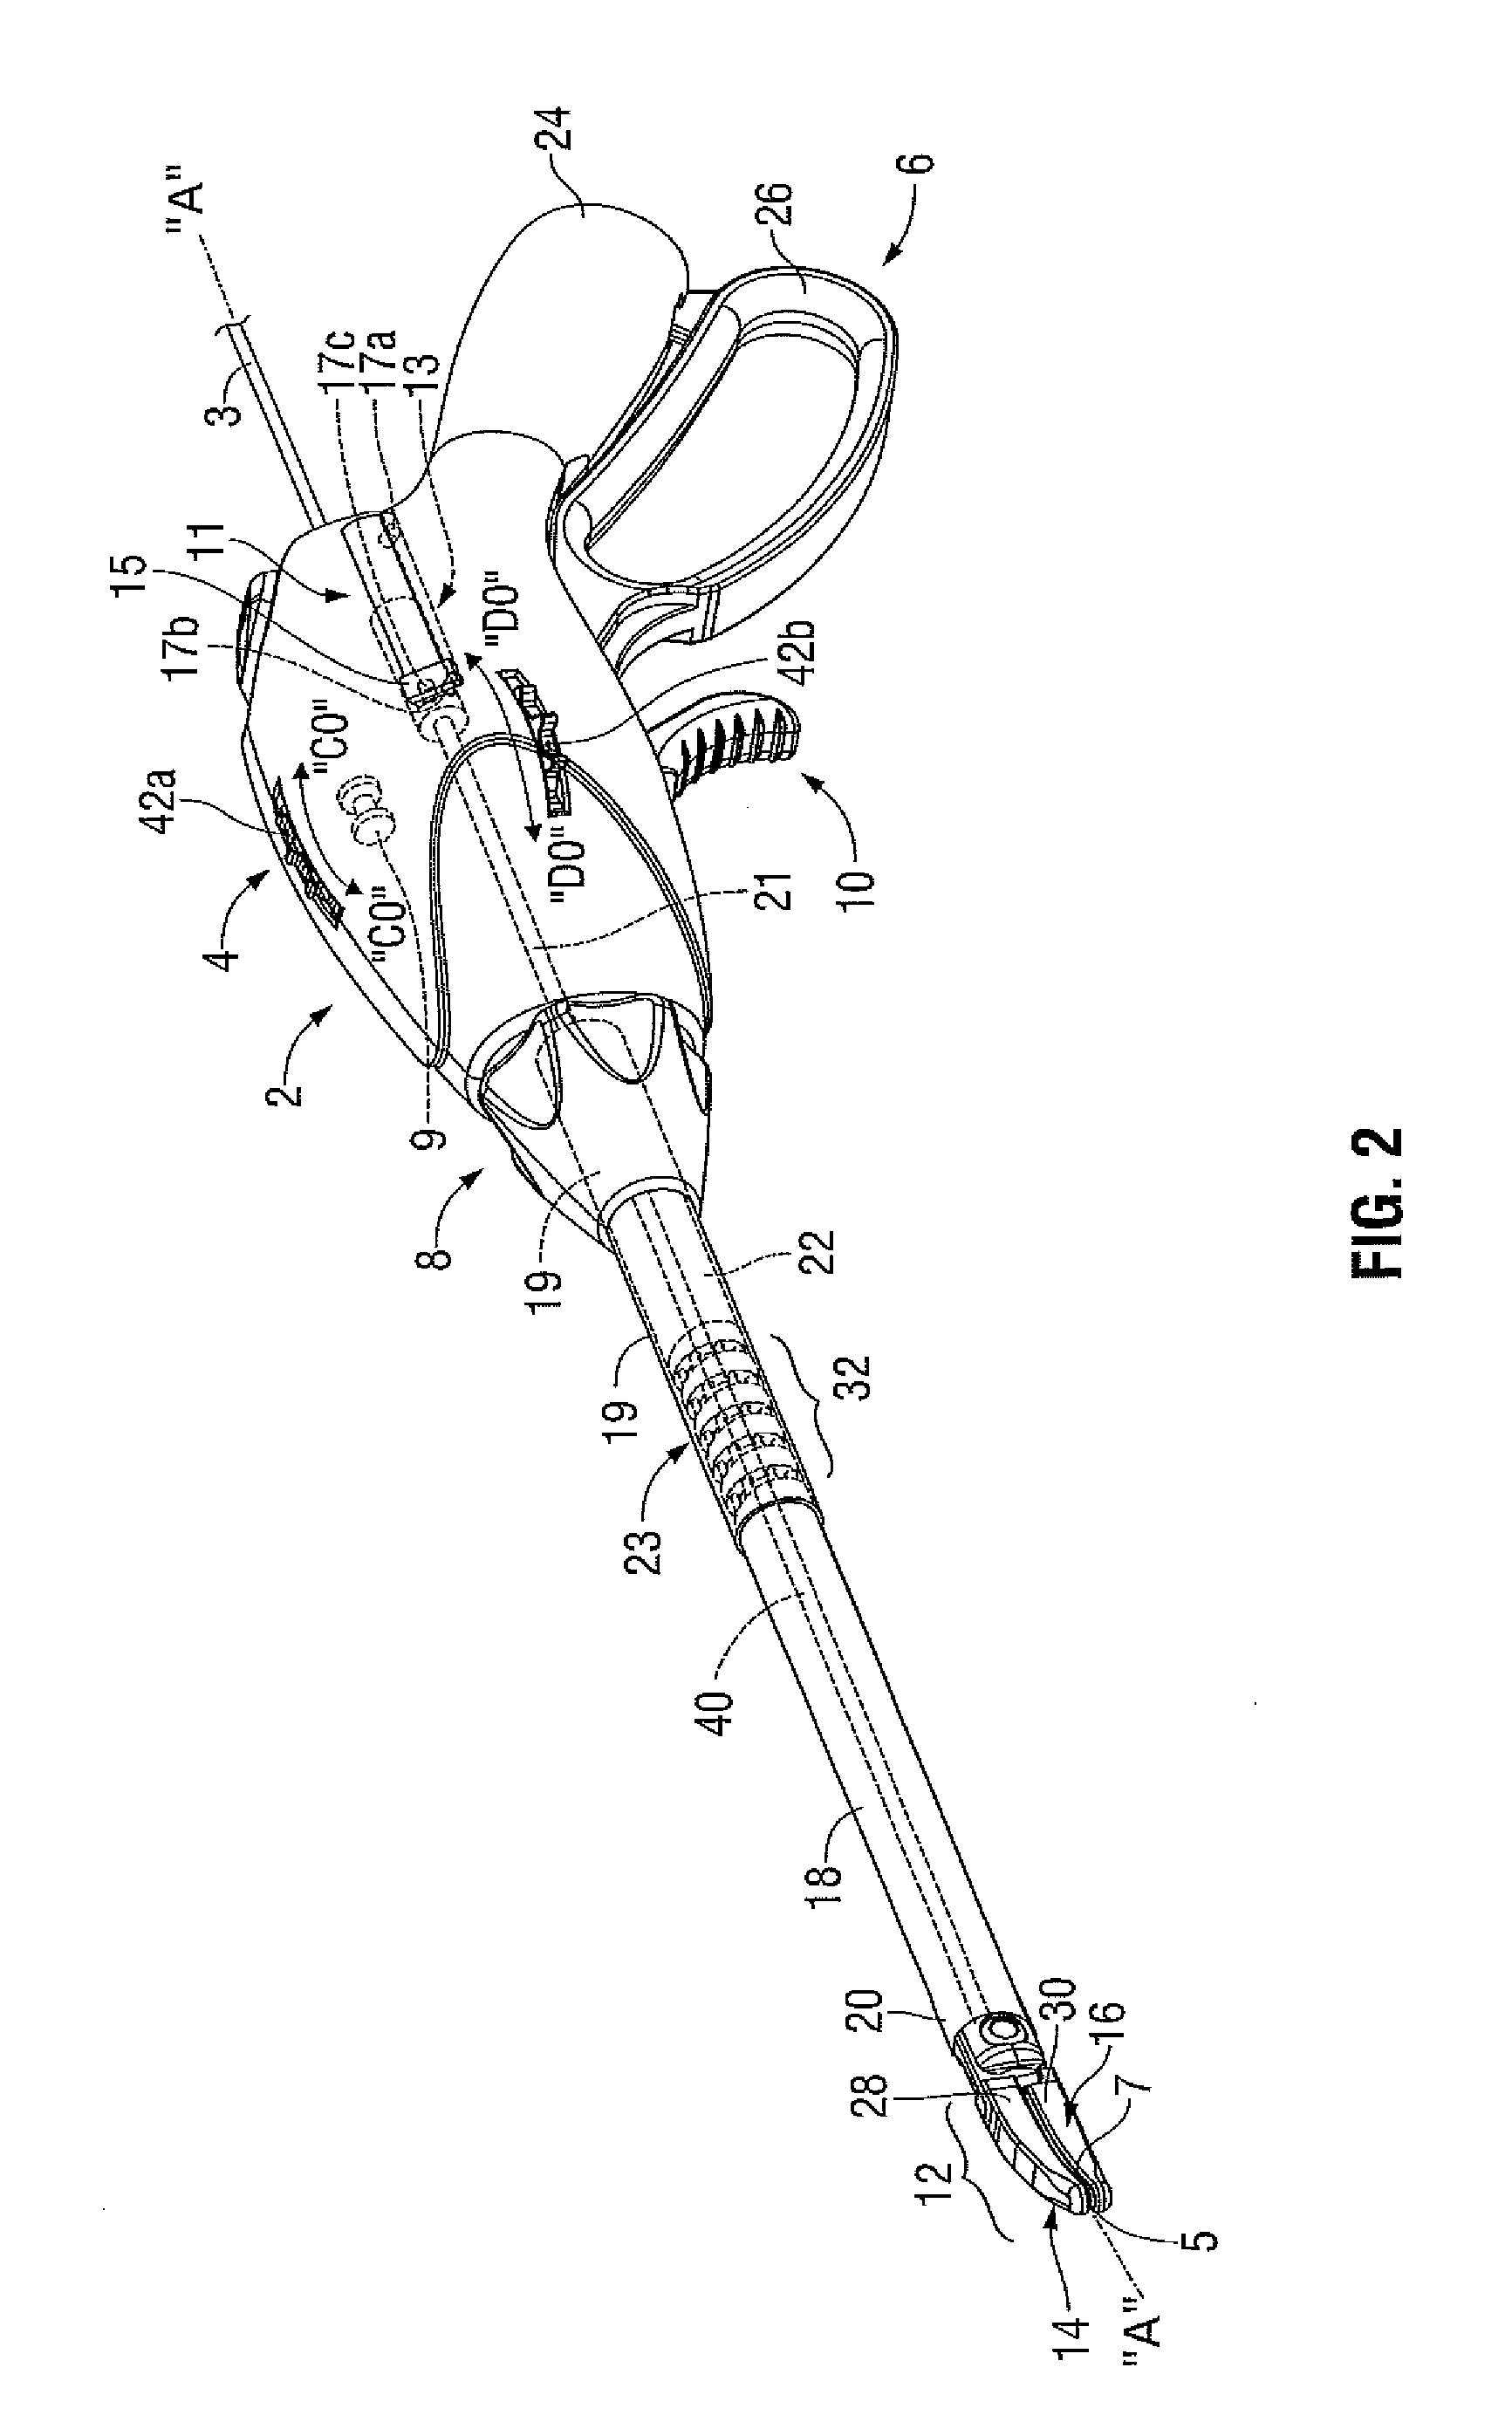 Articulating Surgical Apparatus